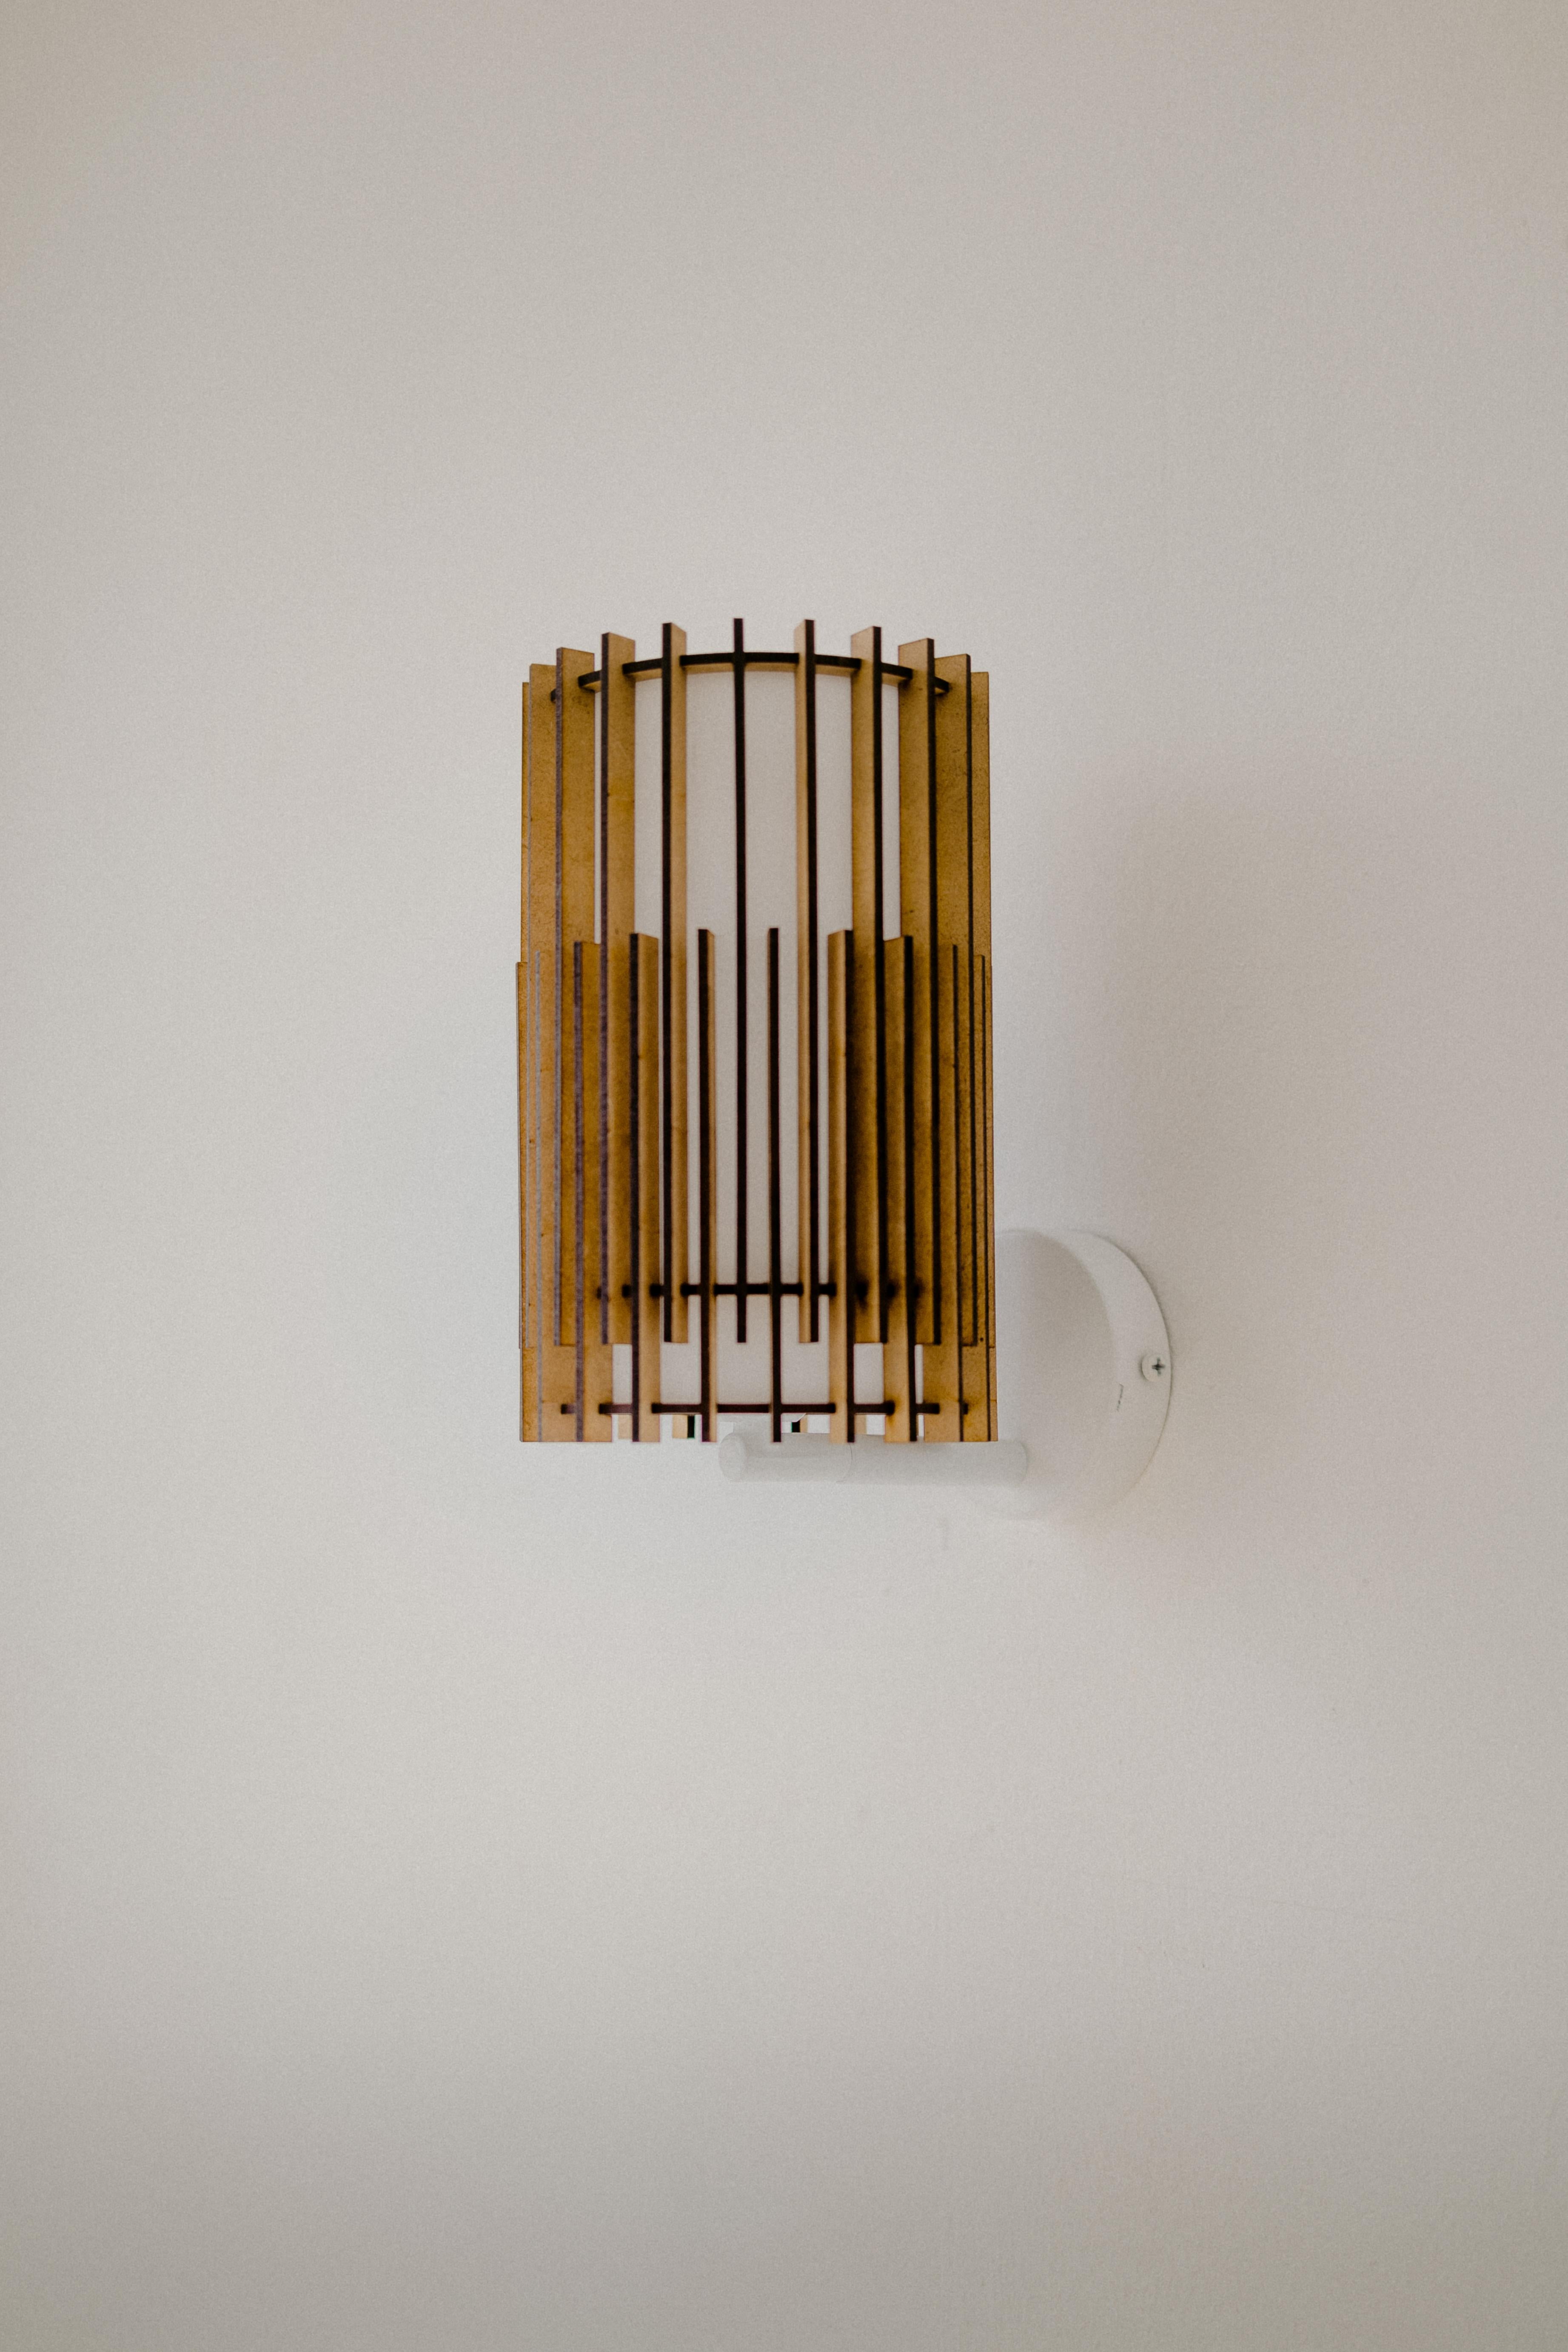 SUAU-Lampen werden von Mediterranean Objects in Barcelona, Spanien, entworfen und hergestellt. 

Sie haben einen äußeren Lampenschirm aus MDF-Holzlatten, die mit dem Laser geschnitten und einzeln zusammengesetzt wurden, wodurch zwei unterschiedliche